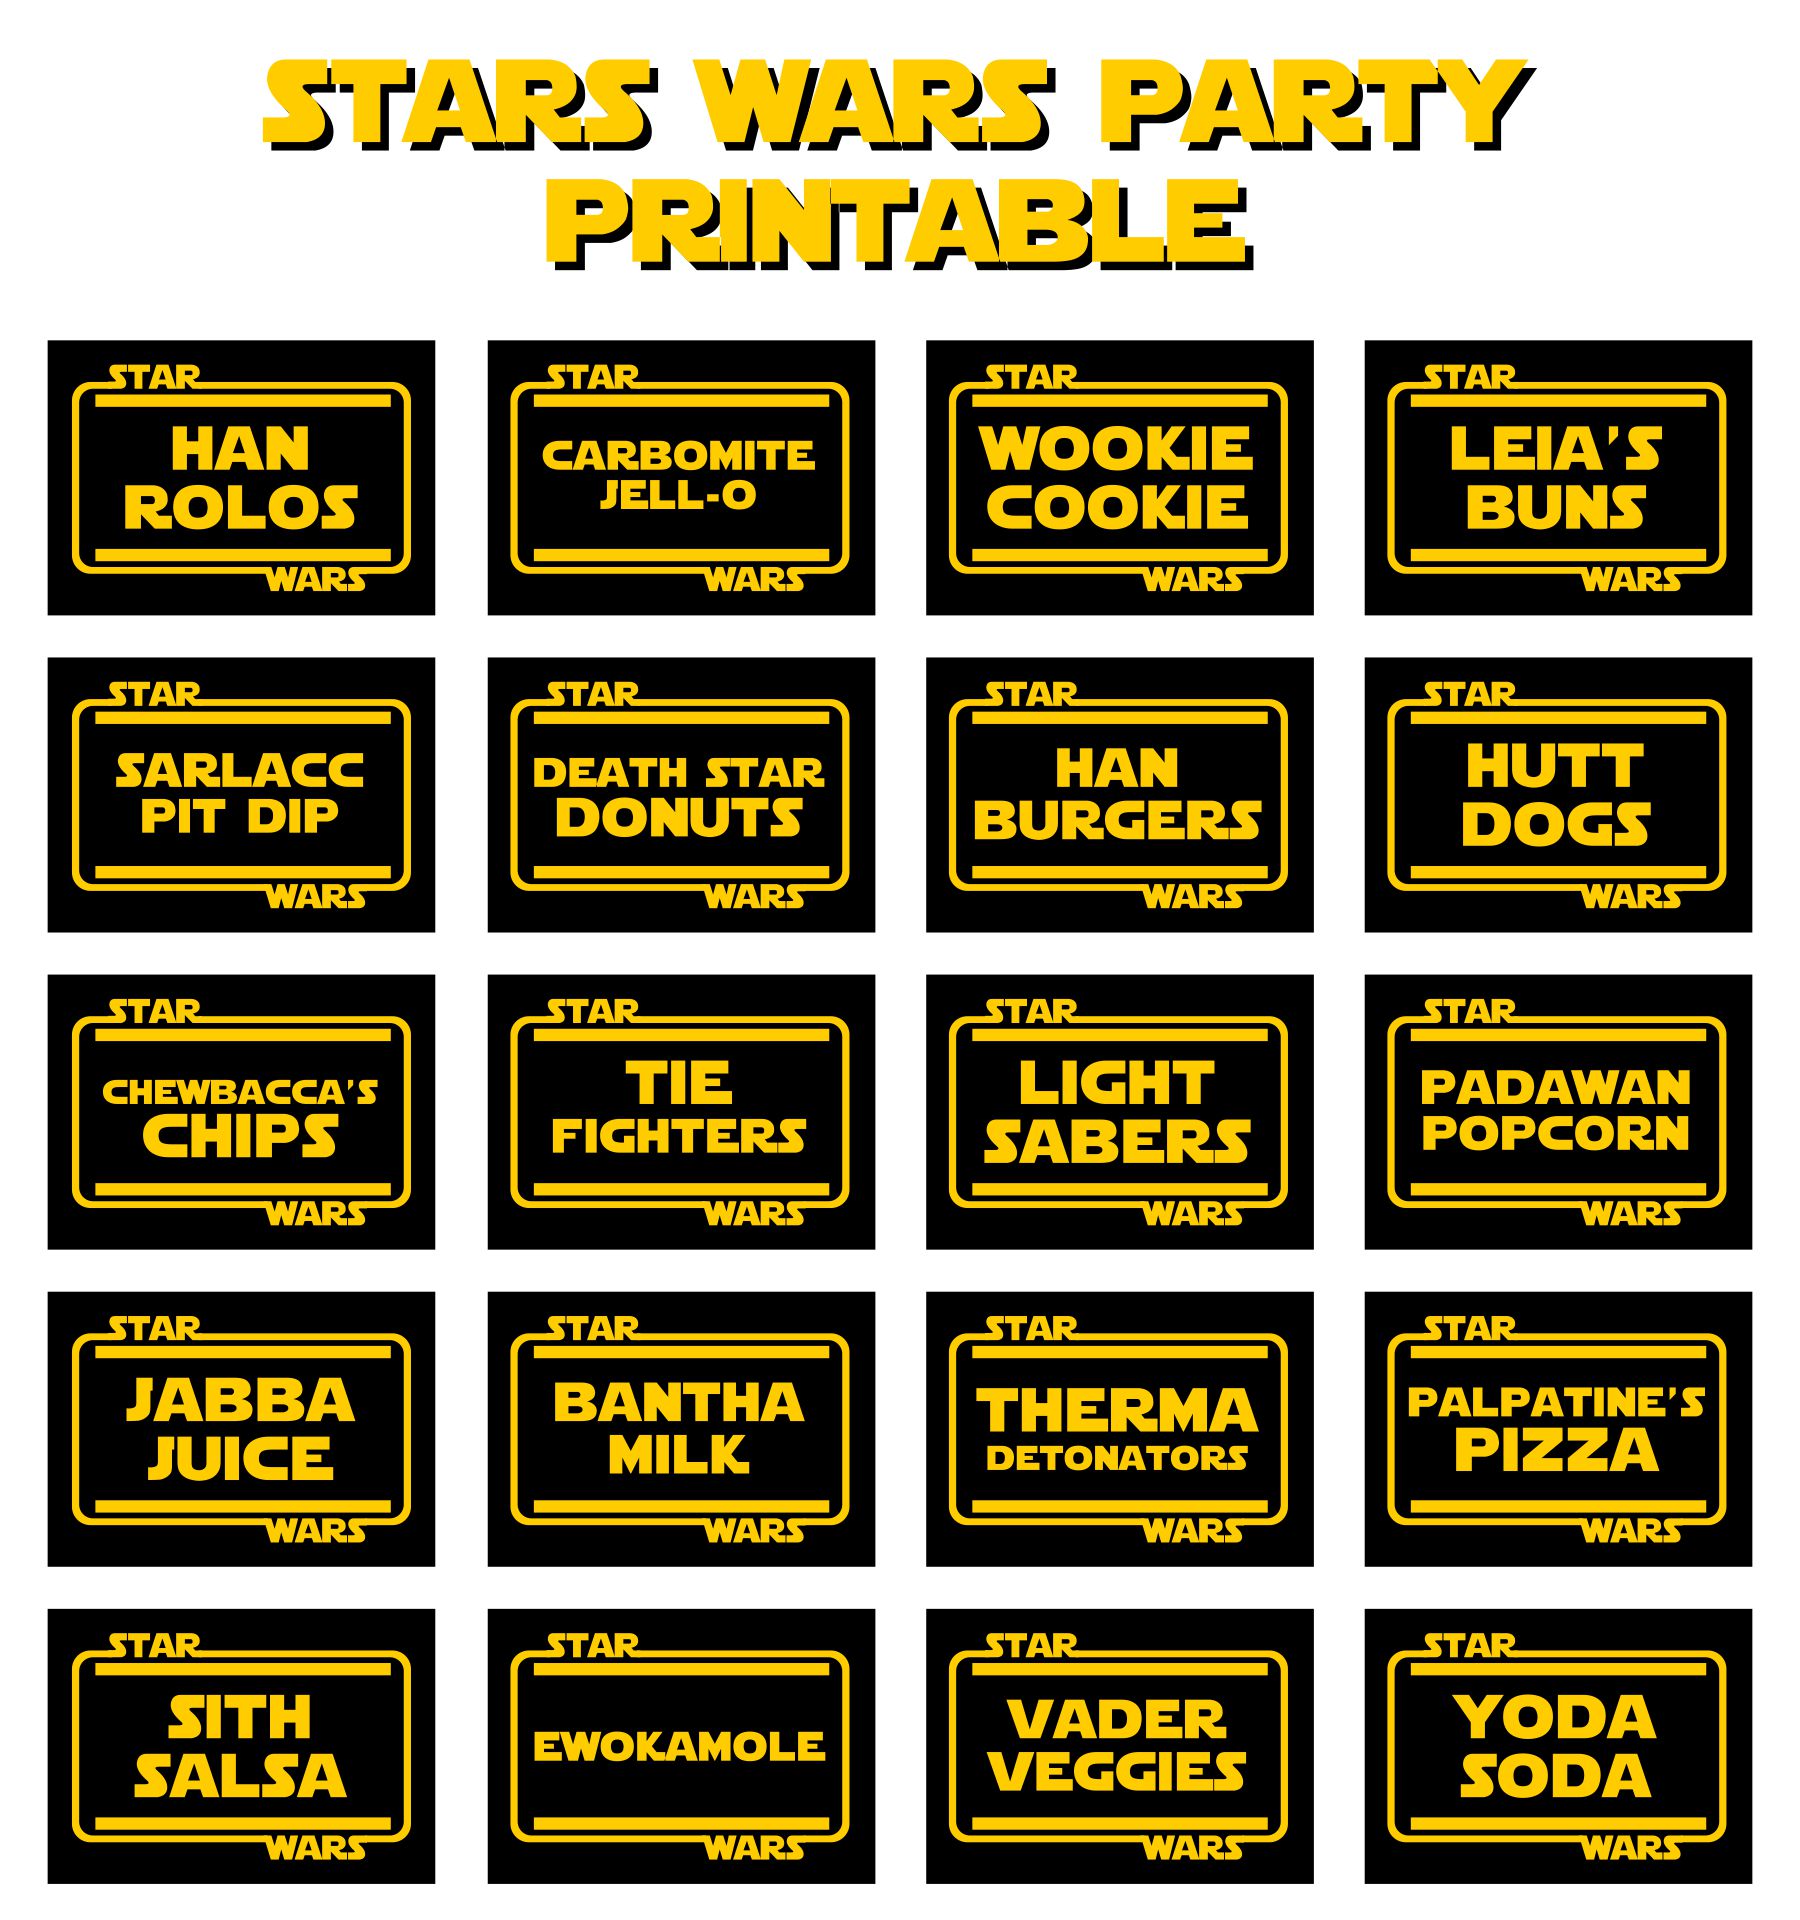 Free Printable Star Wars Food Labels